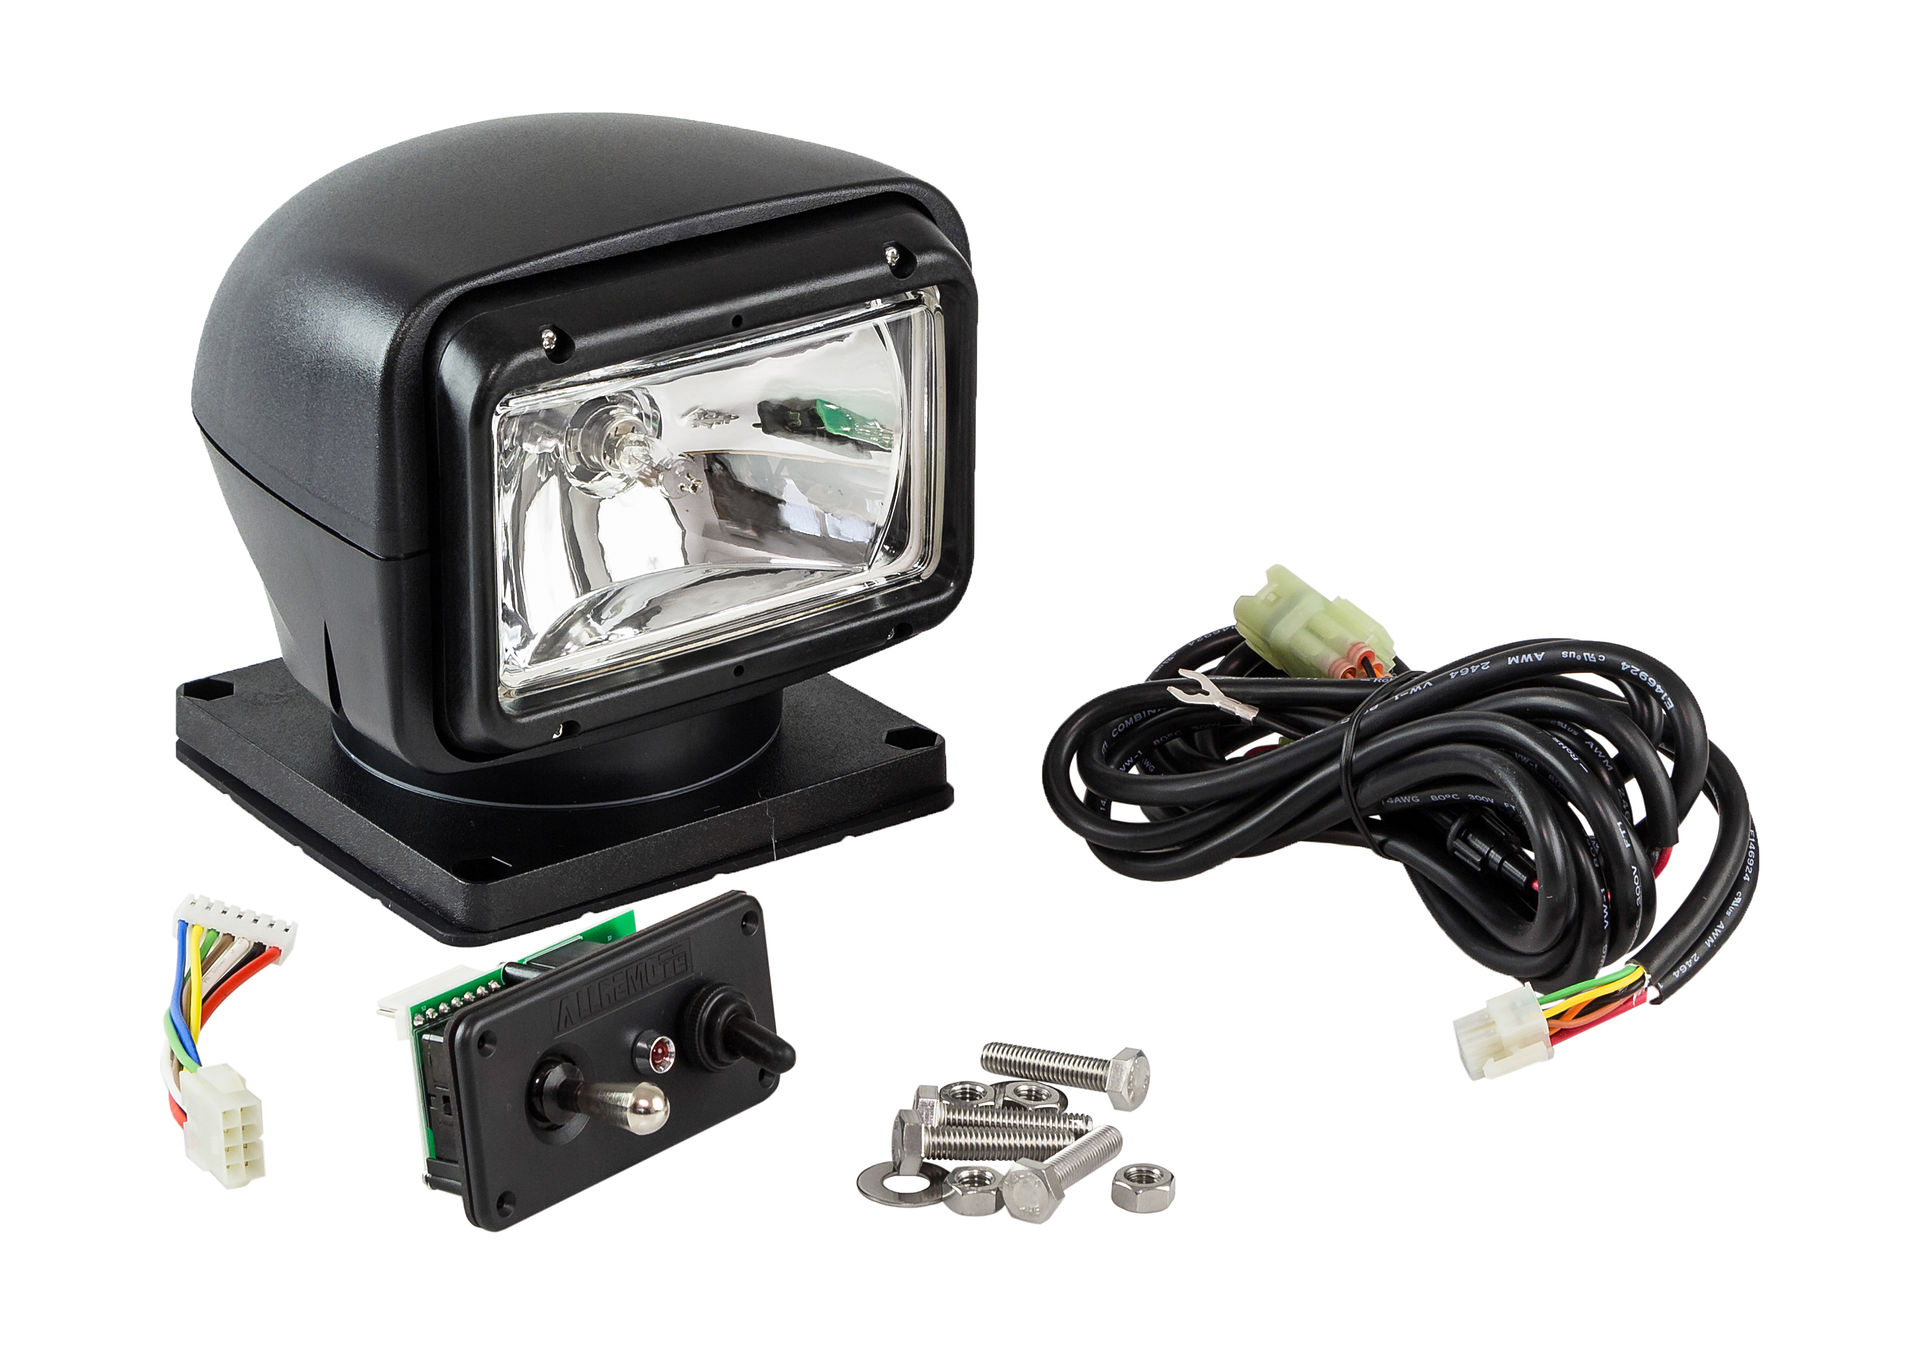 Прожектор с дистанционным управлением, черный корпус, галоген, джойстик, модель 310 Allremote SL31051DCB12VSD